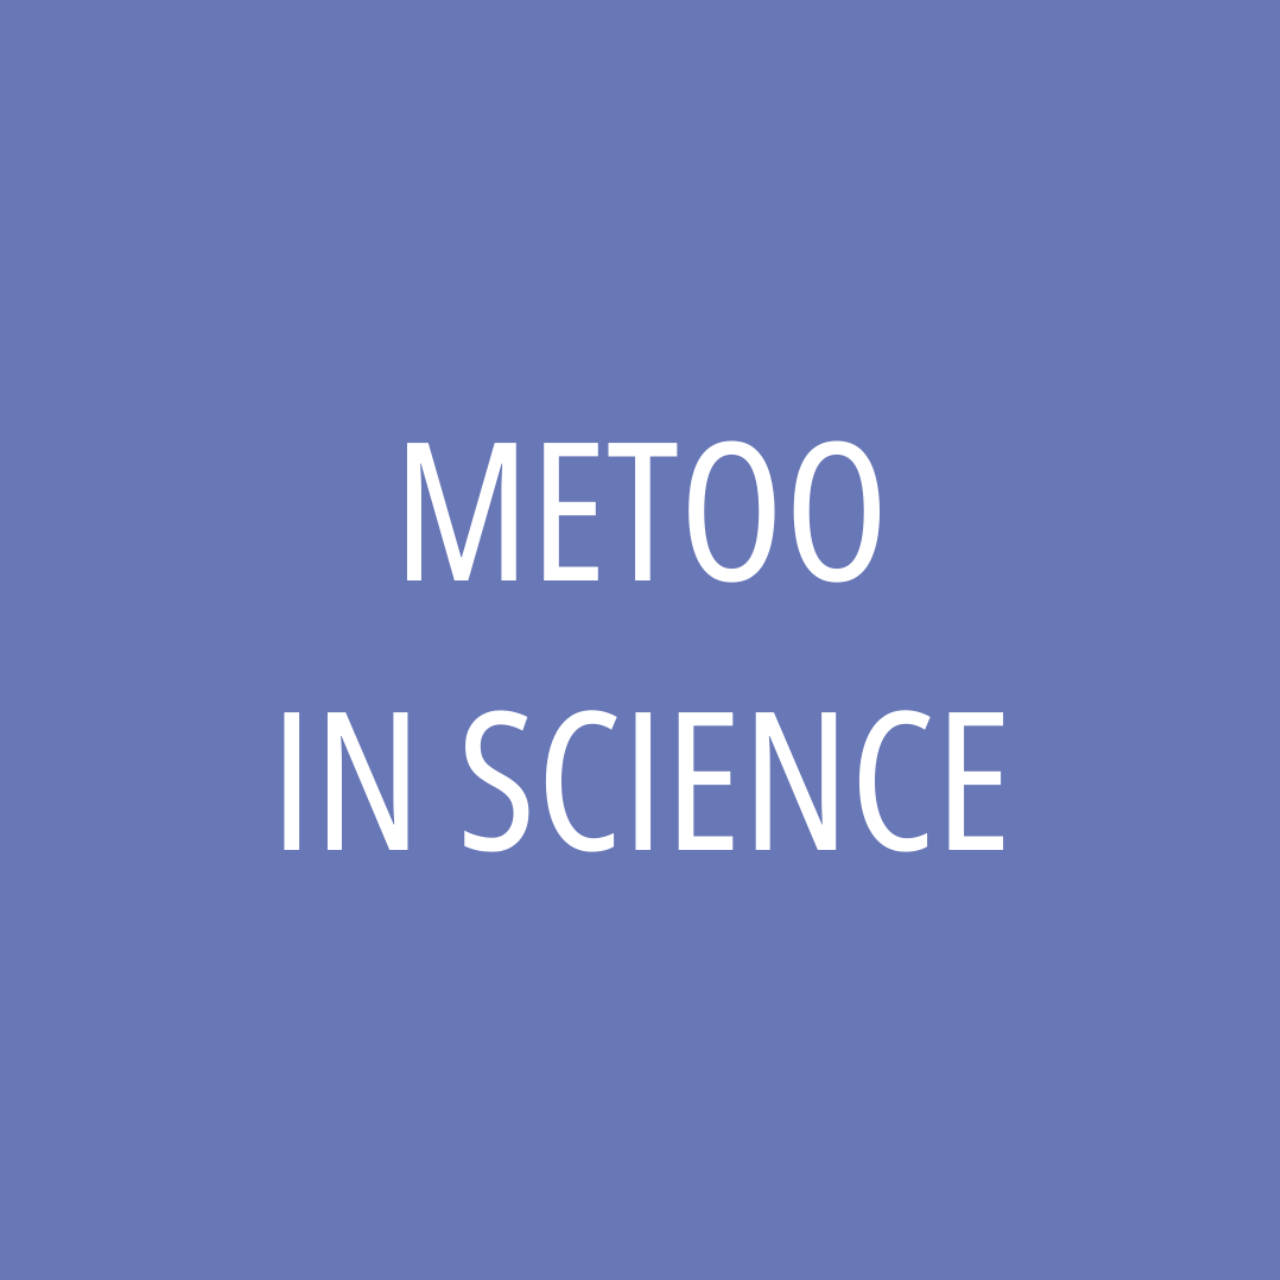 MeToo in Science